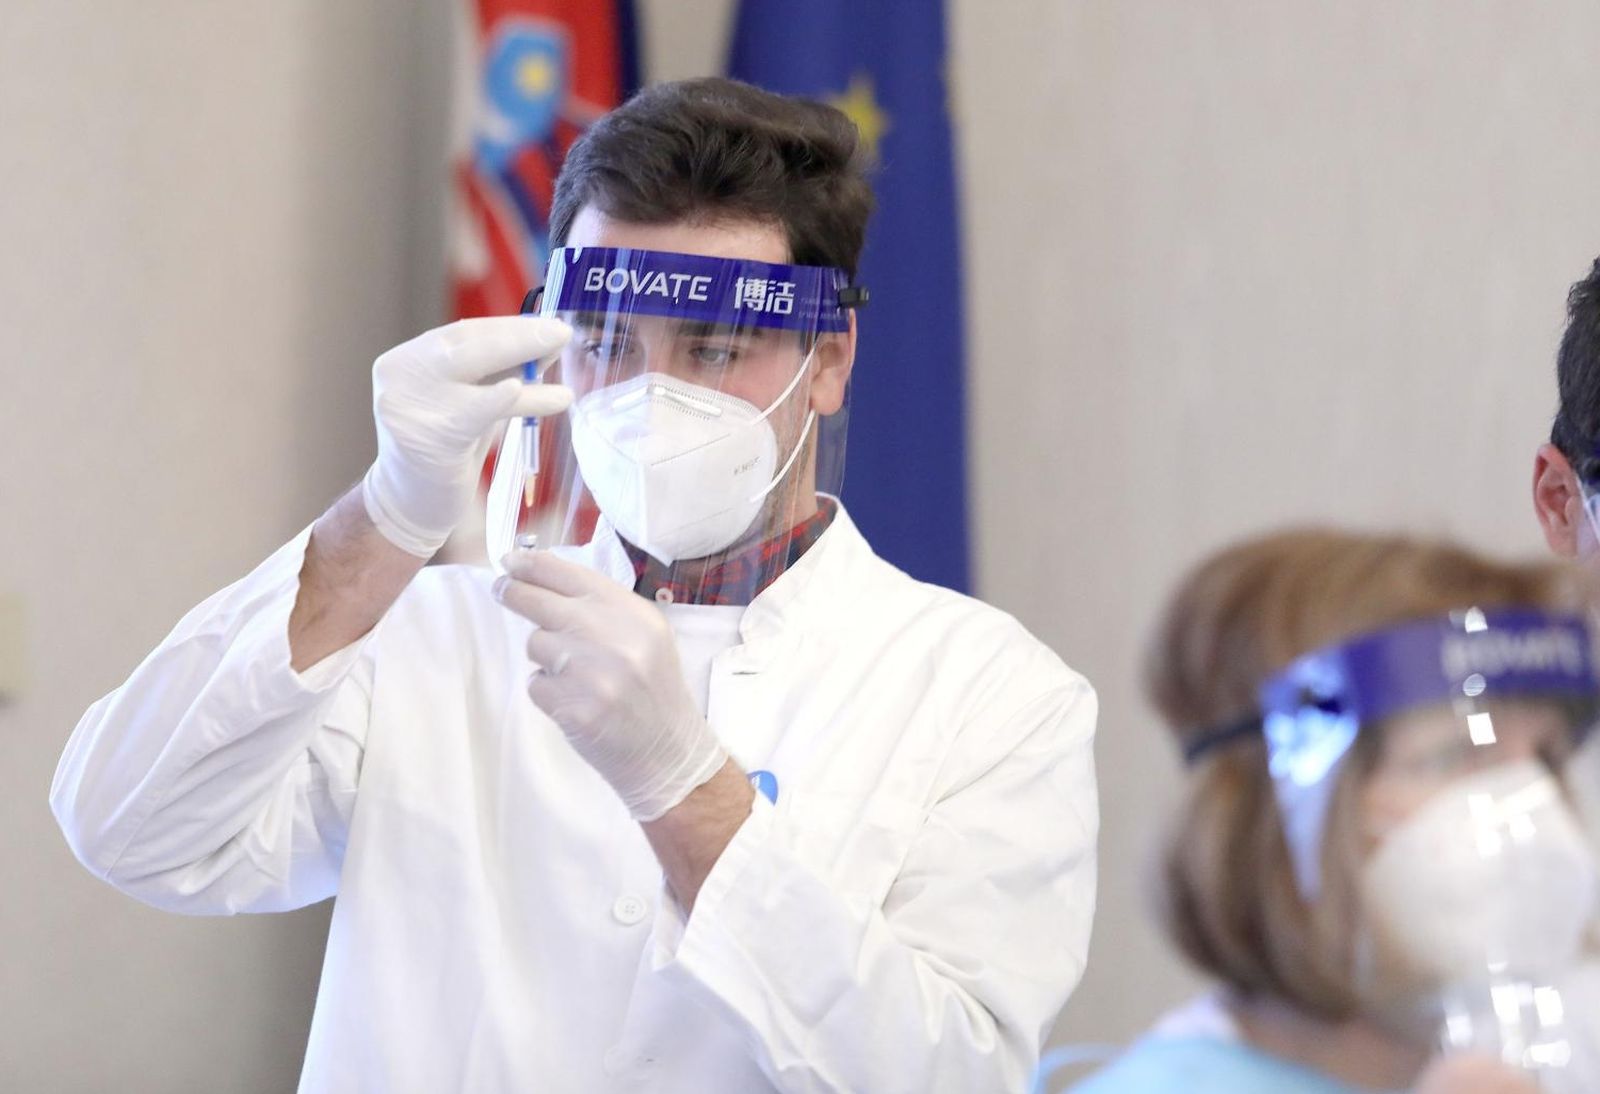 18.1.2021, Zagreb - Doktori pripremaju cjepivo kojim ce se cijepiti saborski zastupnici. Photo: Patrik Macek/PIXSELL